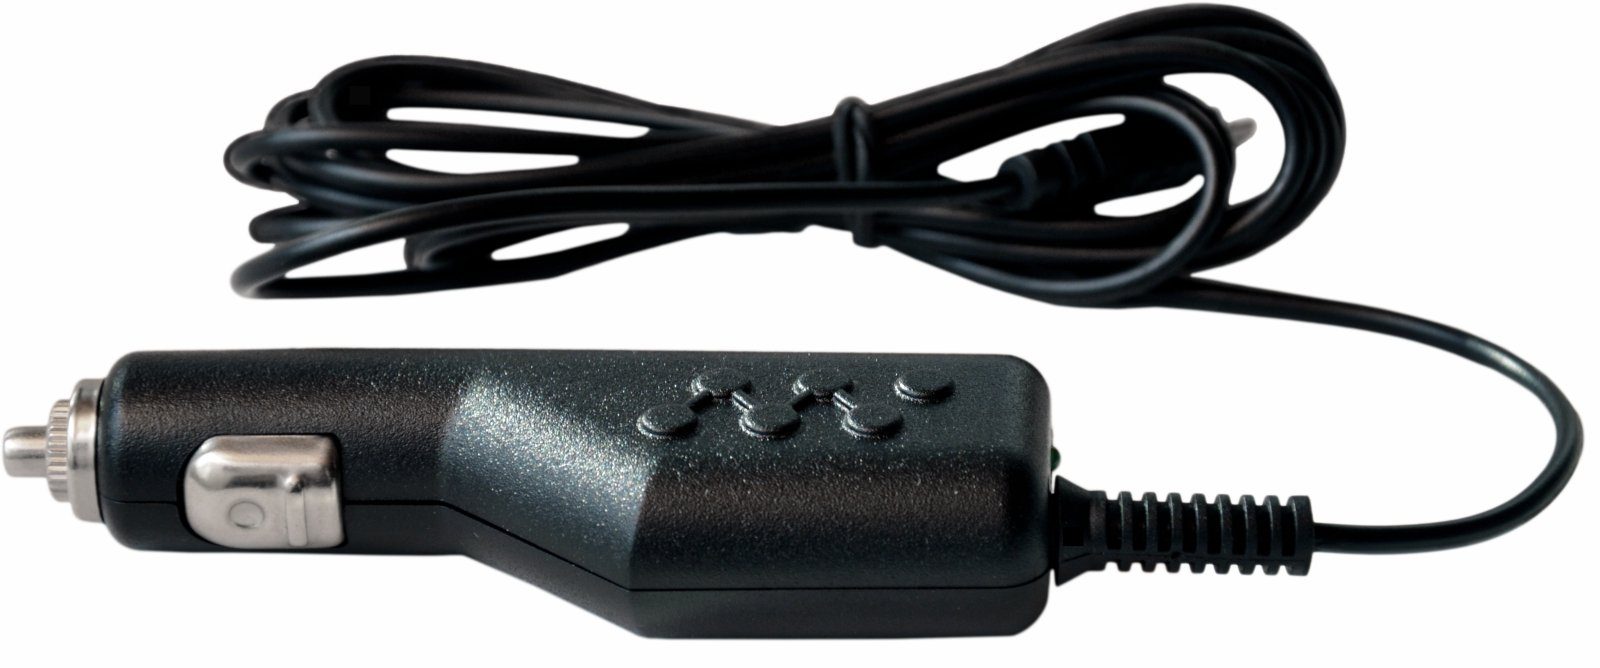 KFZ Ladekabel Ladegerät Micro USB, 12V 24V Anschluss, 2,4A / 5V